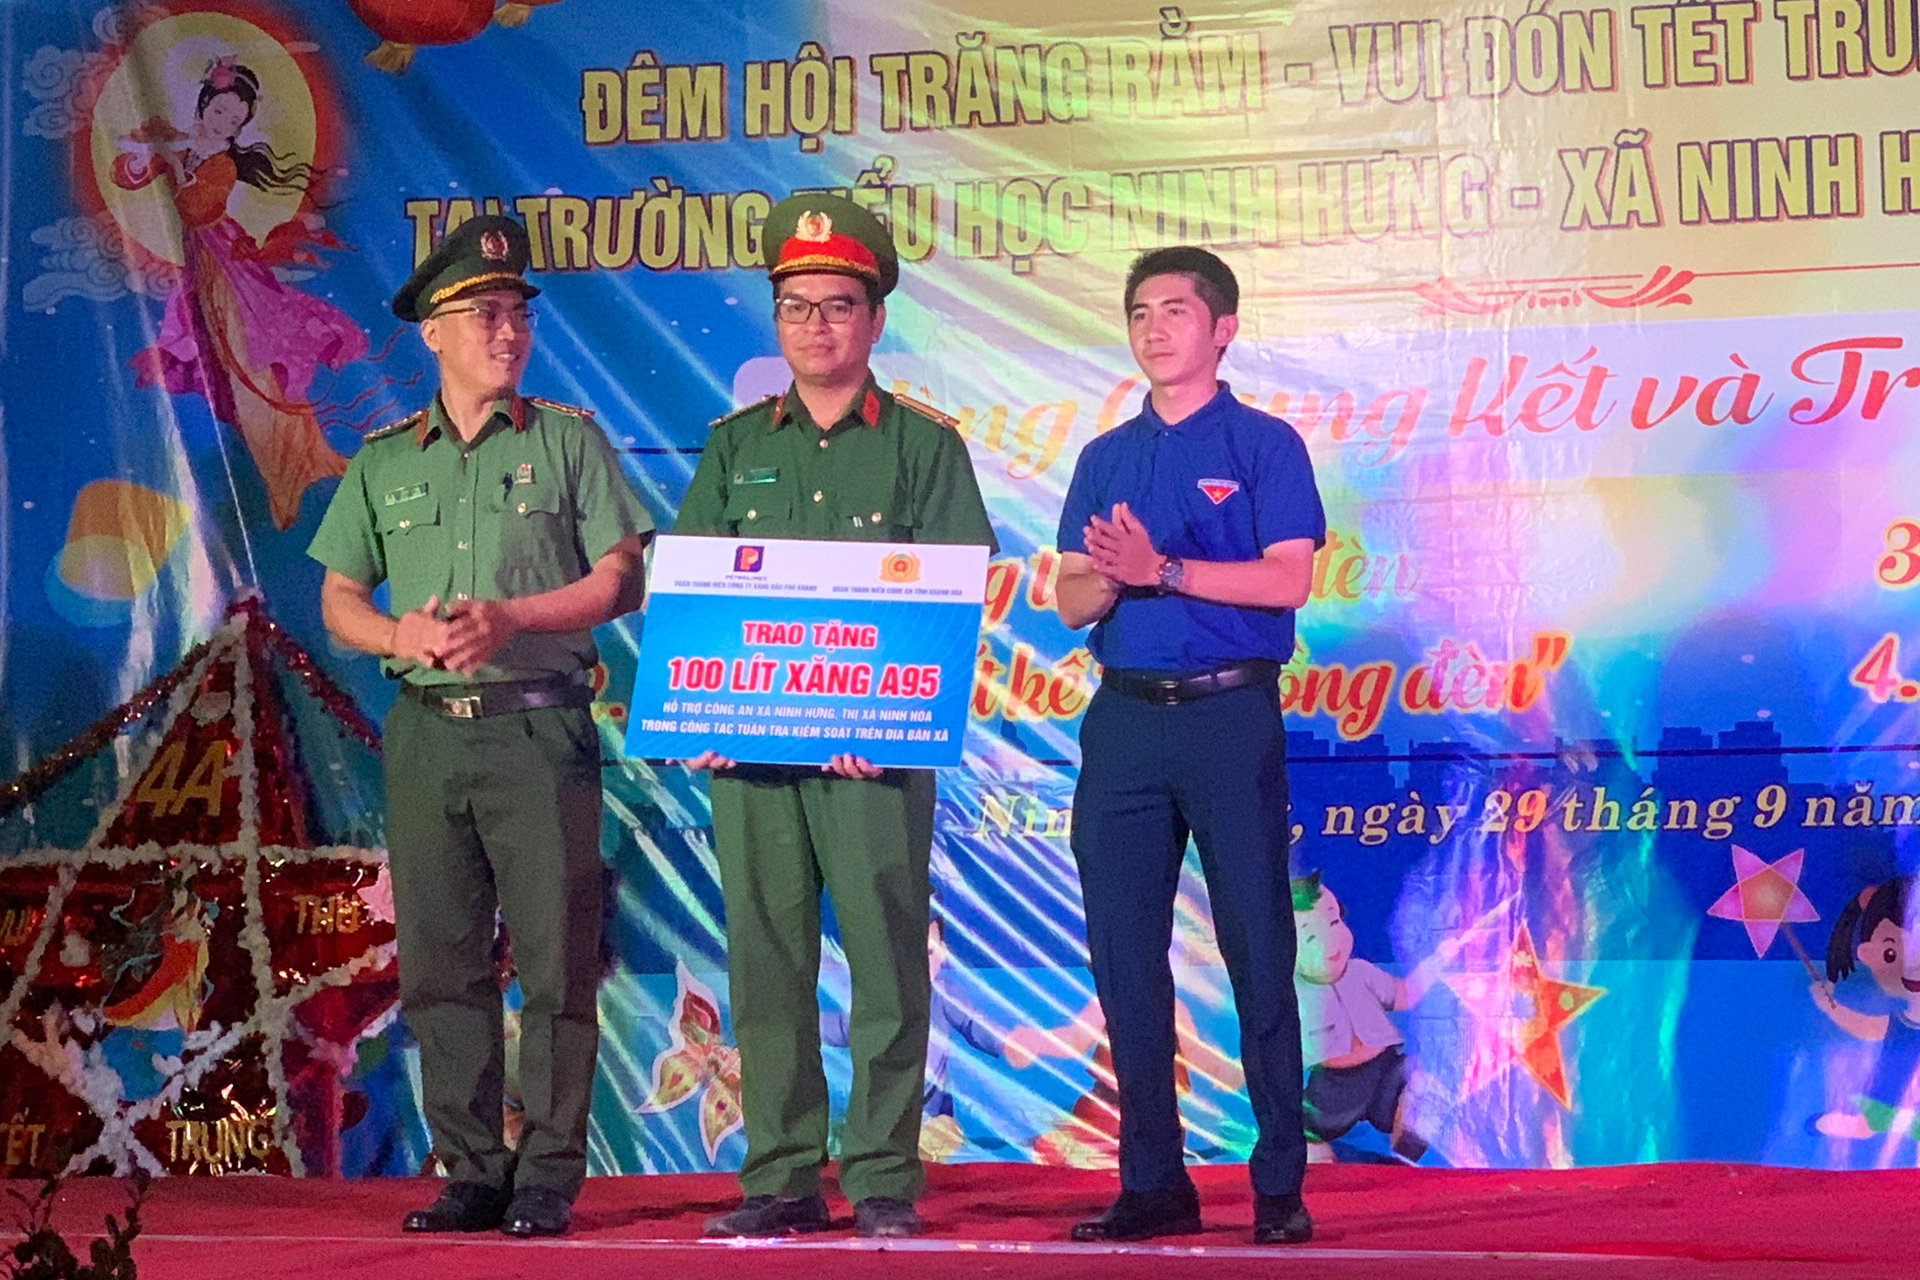 Trao tặng Công an xã Ninh Hưng 100 lít xăng A95 hỗ trợ công tác tuần tra kiểm soát, đảm bảo an ninh, trật tự trên địa bàn xã.